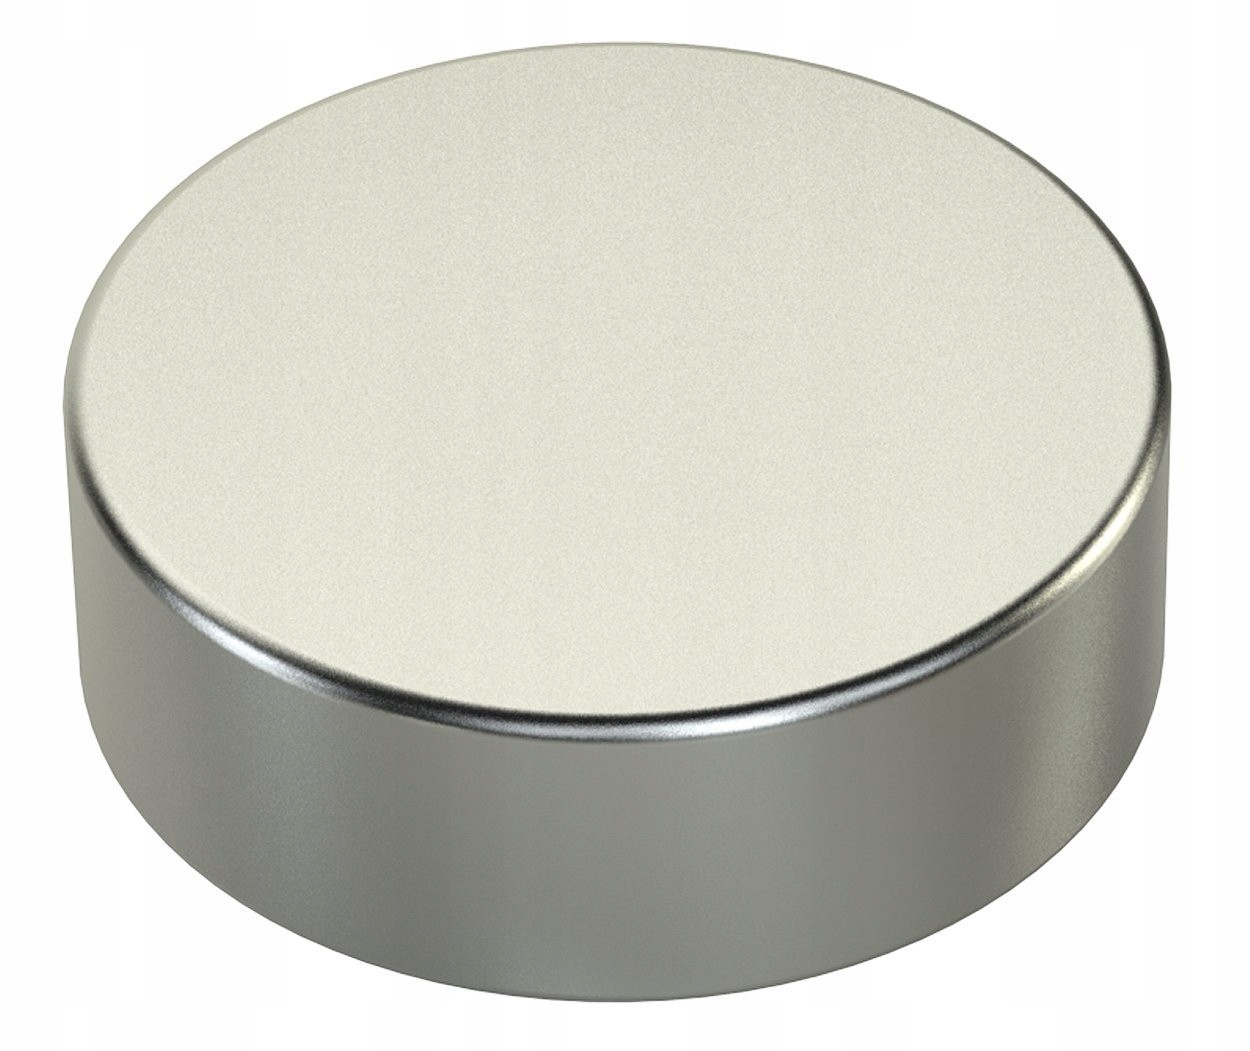 Неодимовый магнит диск  5х2мм сцепление 0,32 кг (упаковка 44 шт) Rexant